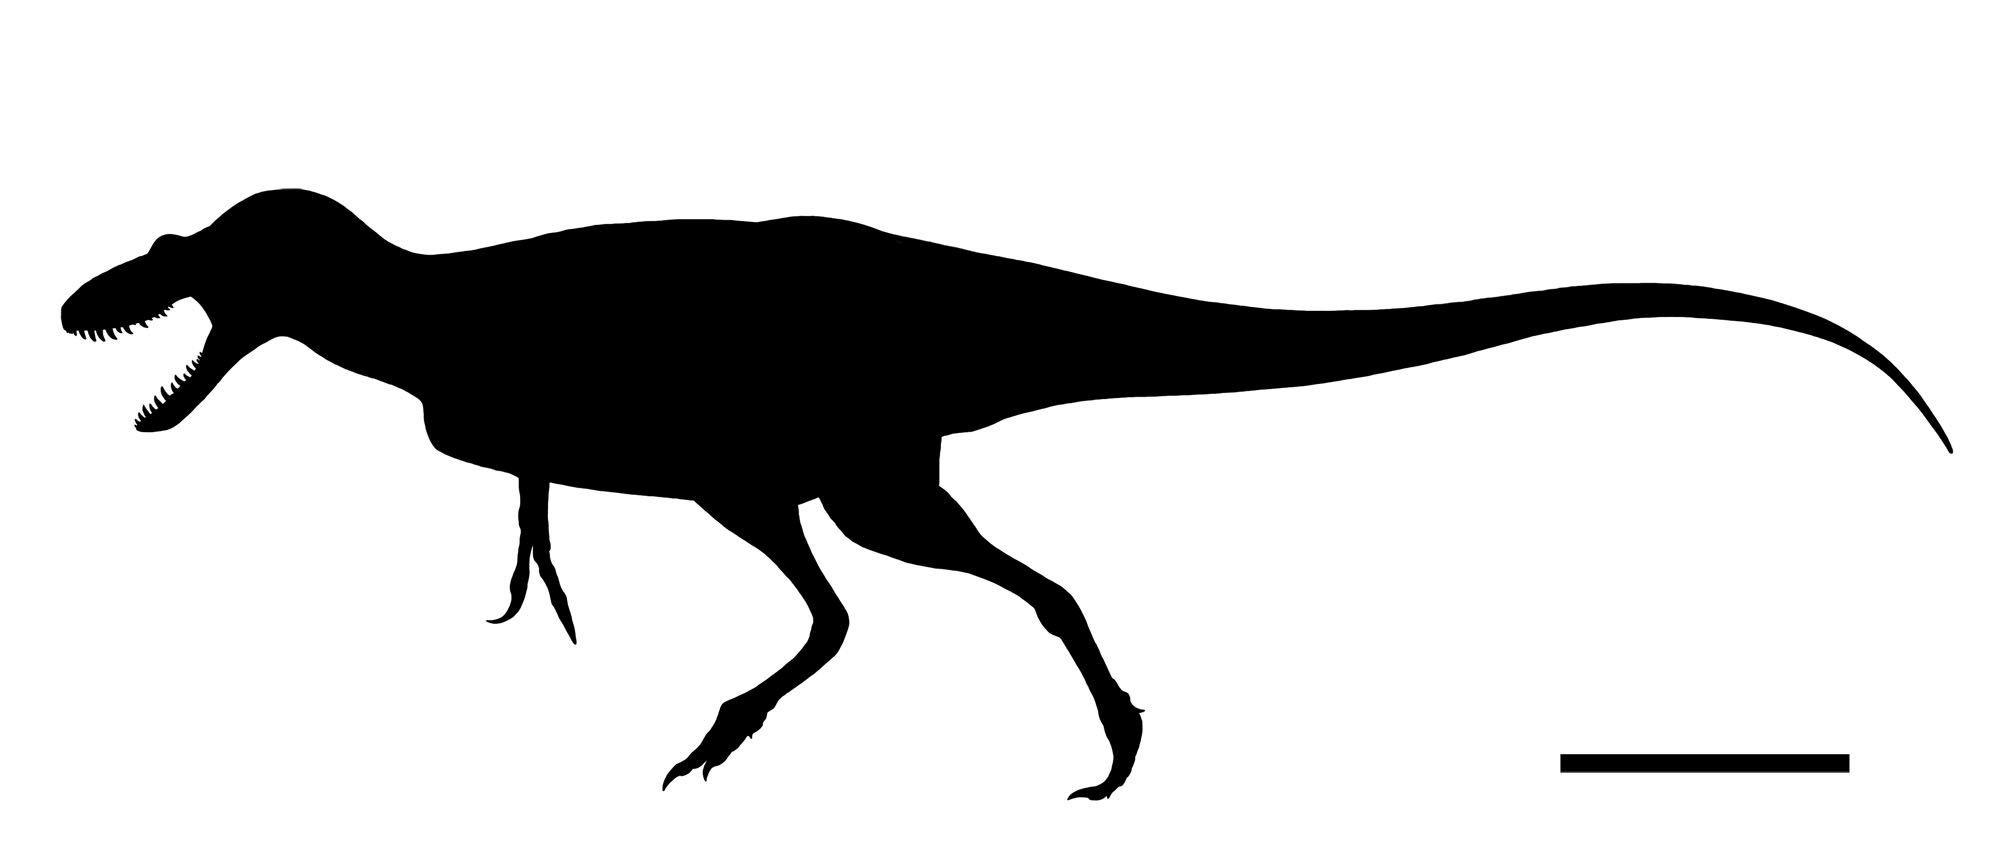 らえらぷす 新 恐竜骨格図集 発売中 ティムーレンギアくん 大体こんな感じだと思うけど化石が化石なので察してほしい T Co W1ypuuxafd Twitter